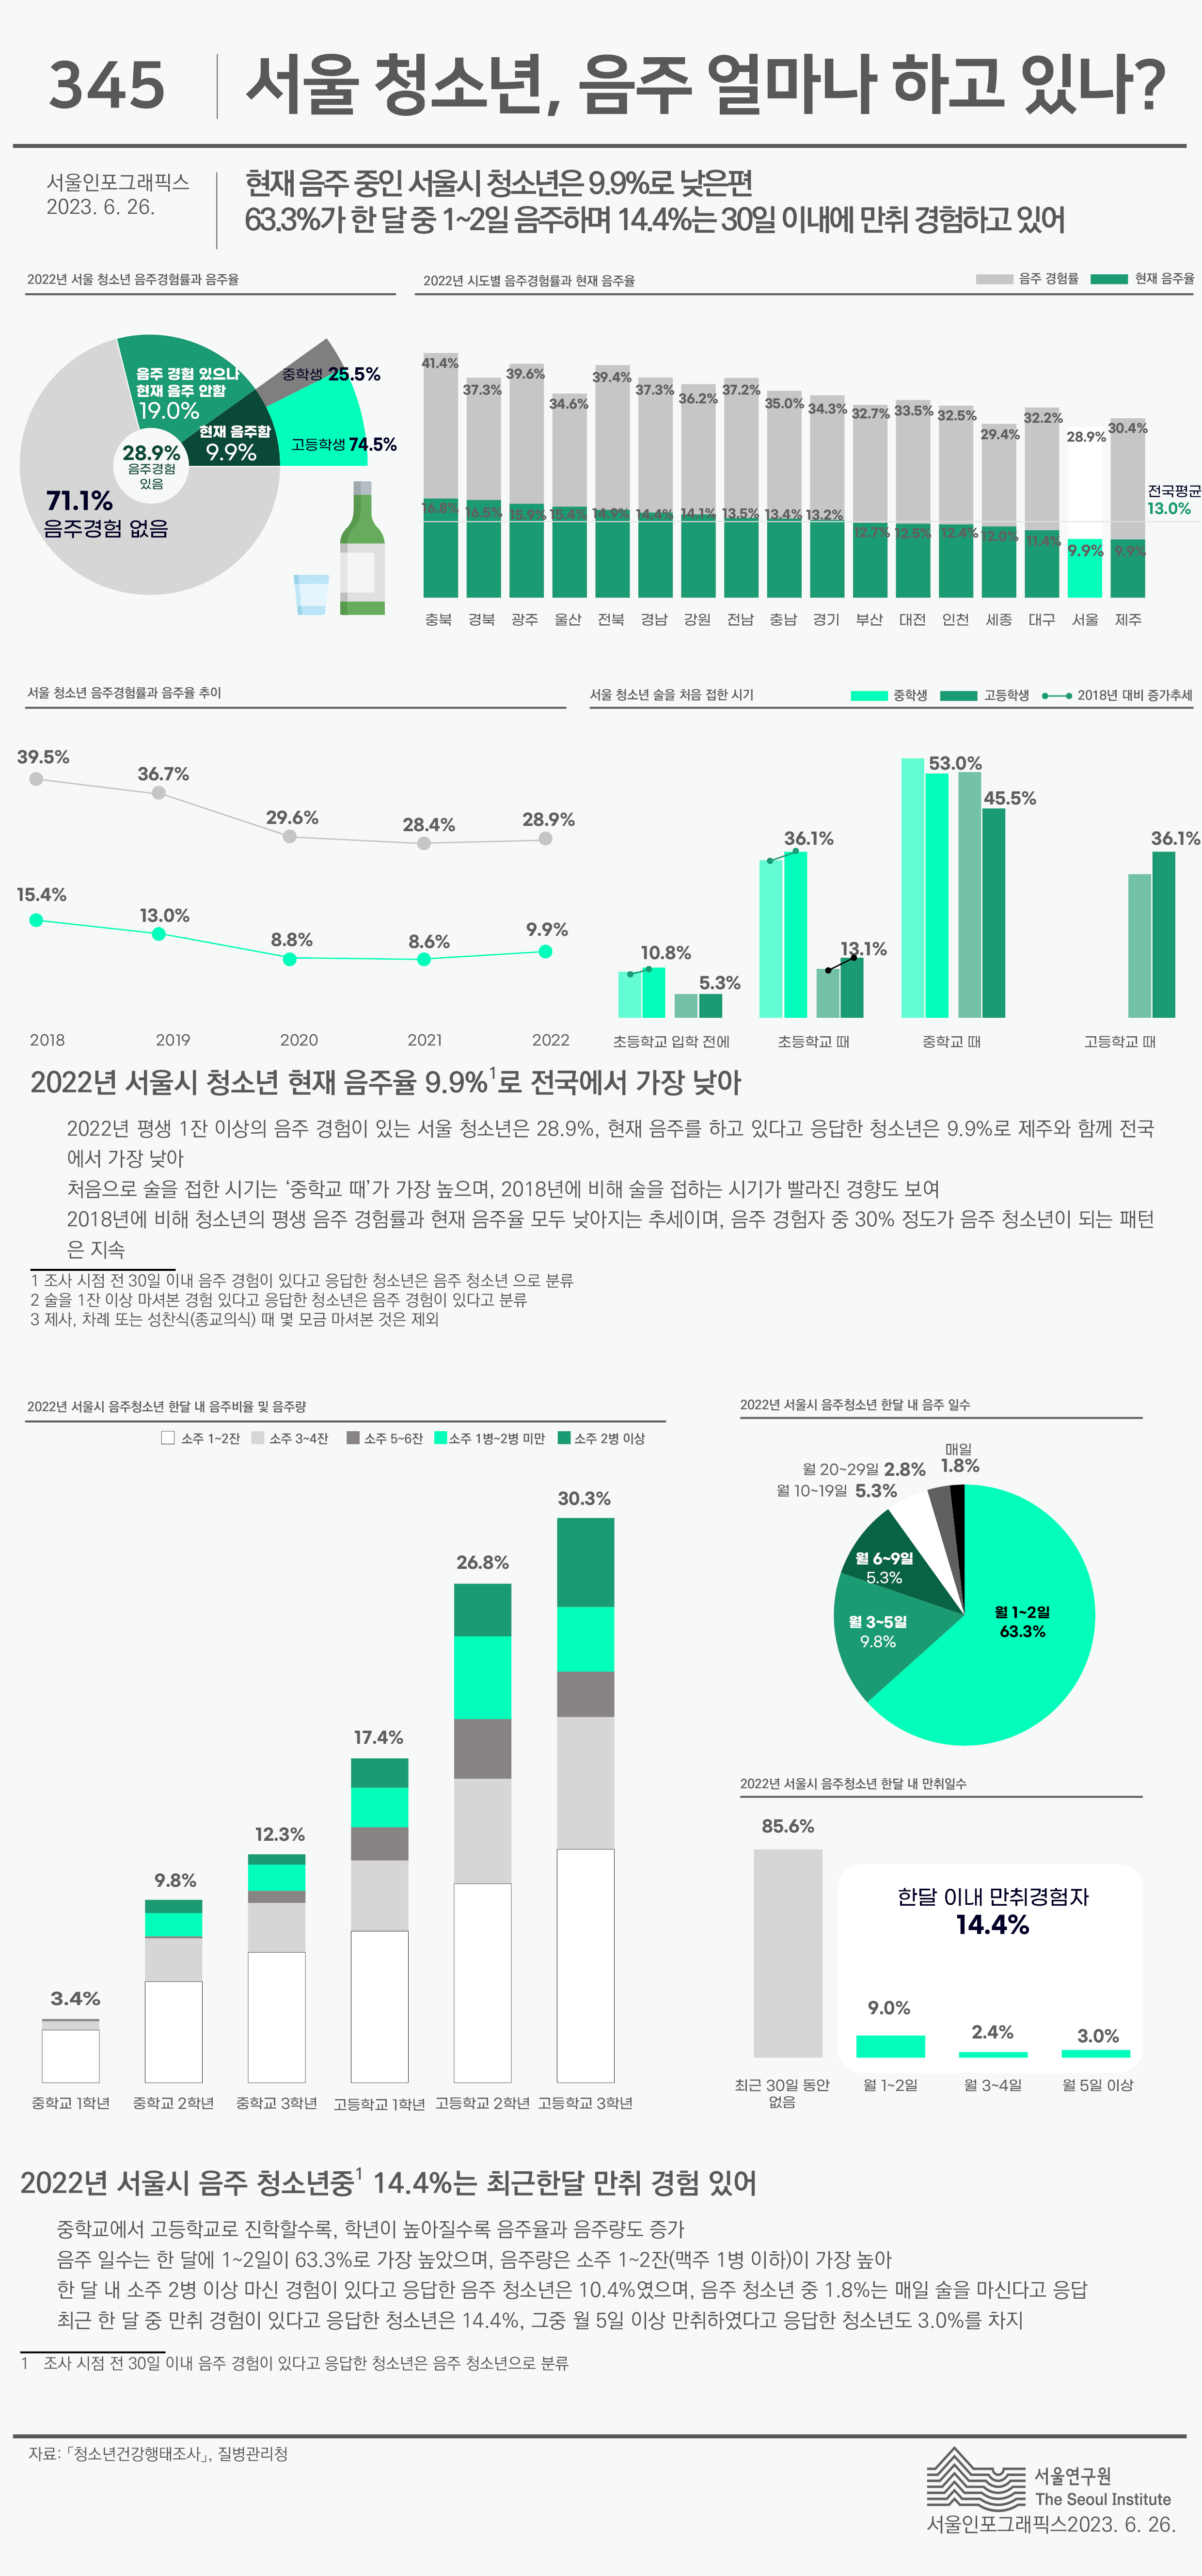 현재 음주 중인 서울시 청소년은 9.9%로 낮은 편 63.3%가 한 달 중 1~2일 음주하며 14.4%는 30일 이내에 만취 경험하고 있어 로 정리될 수 있습니다. 인포그래픽으로 제공되는 그래픽은 하단에 표로 자세히 제공됩니다.